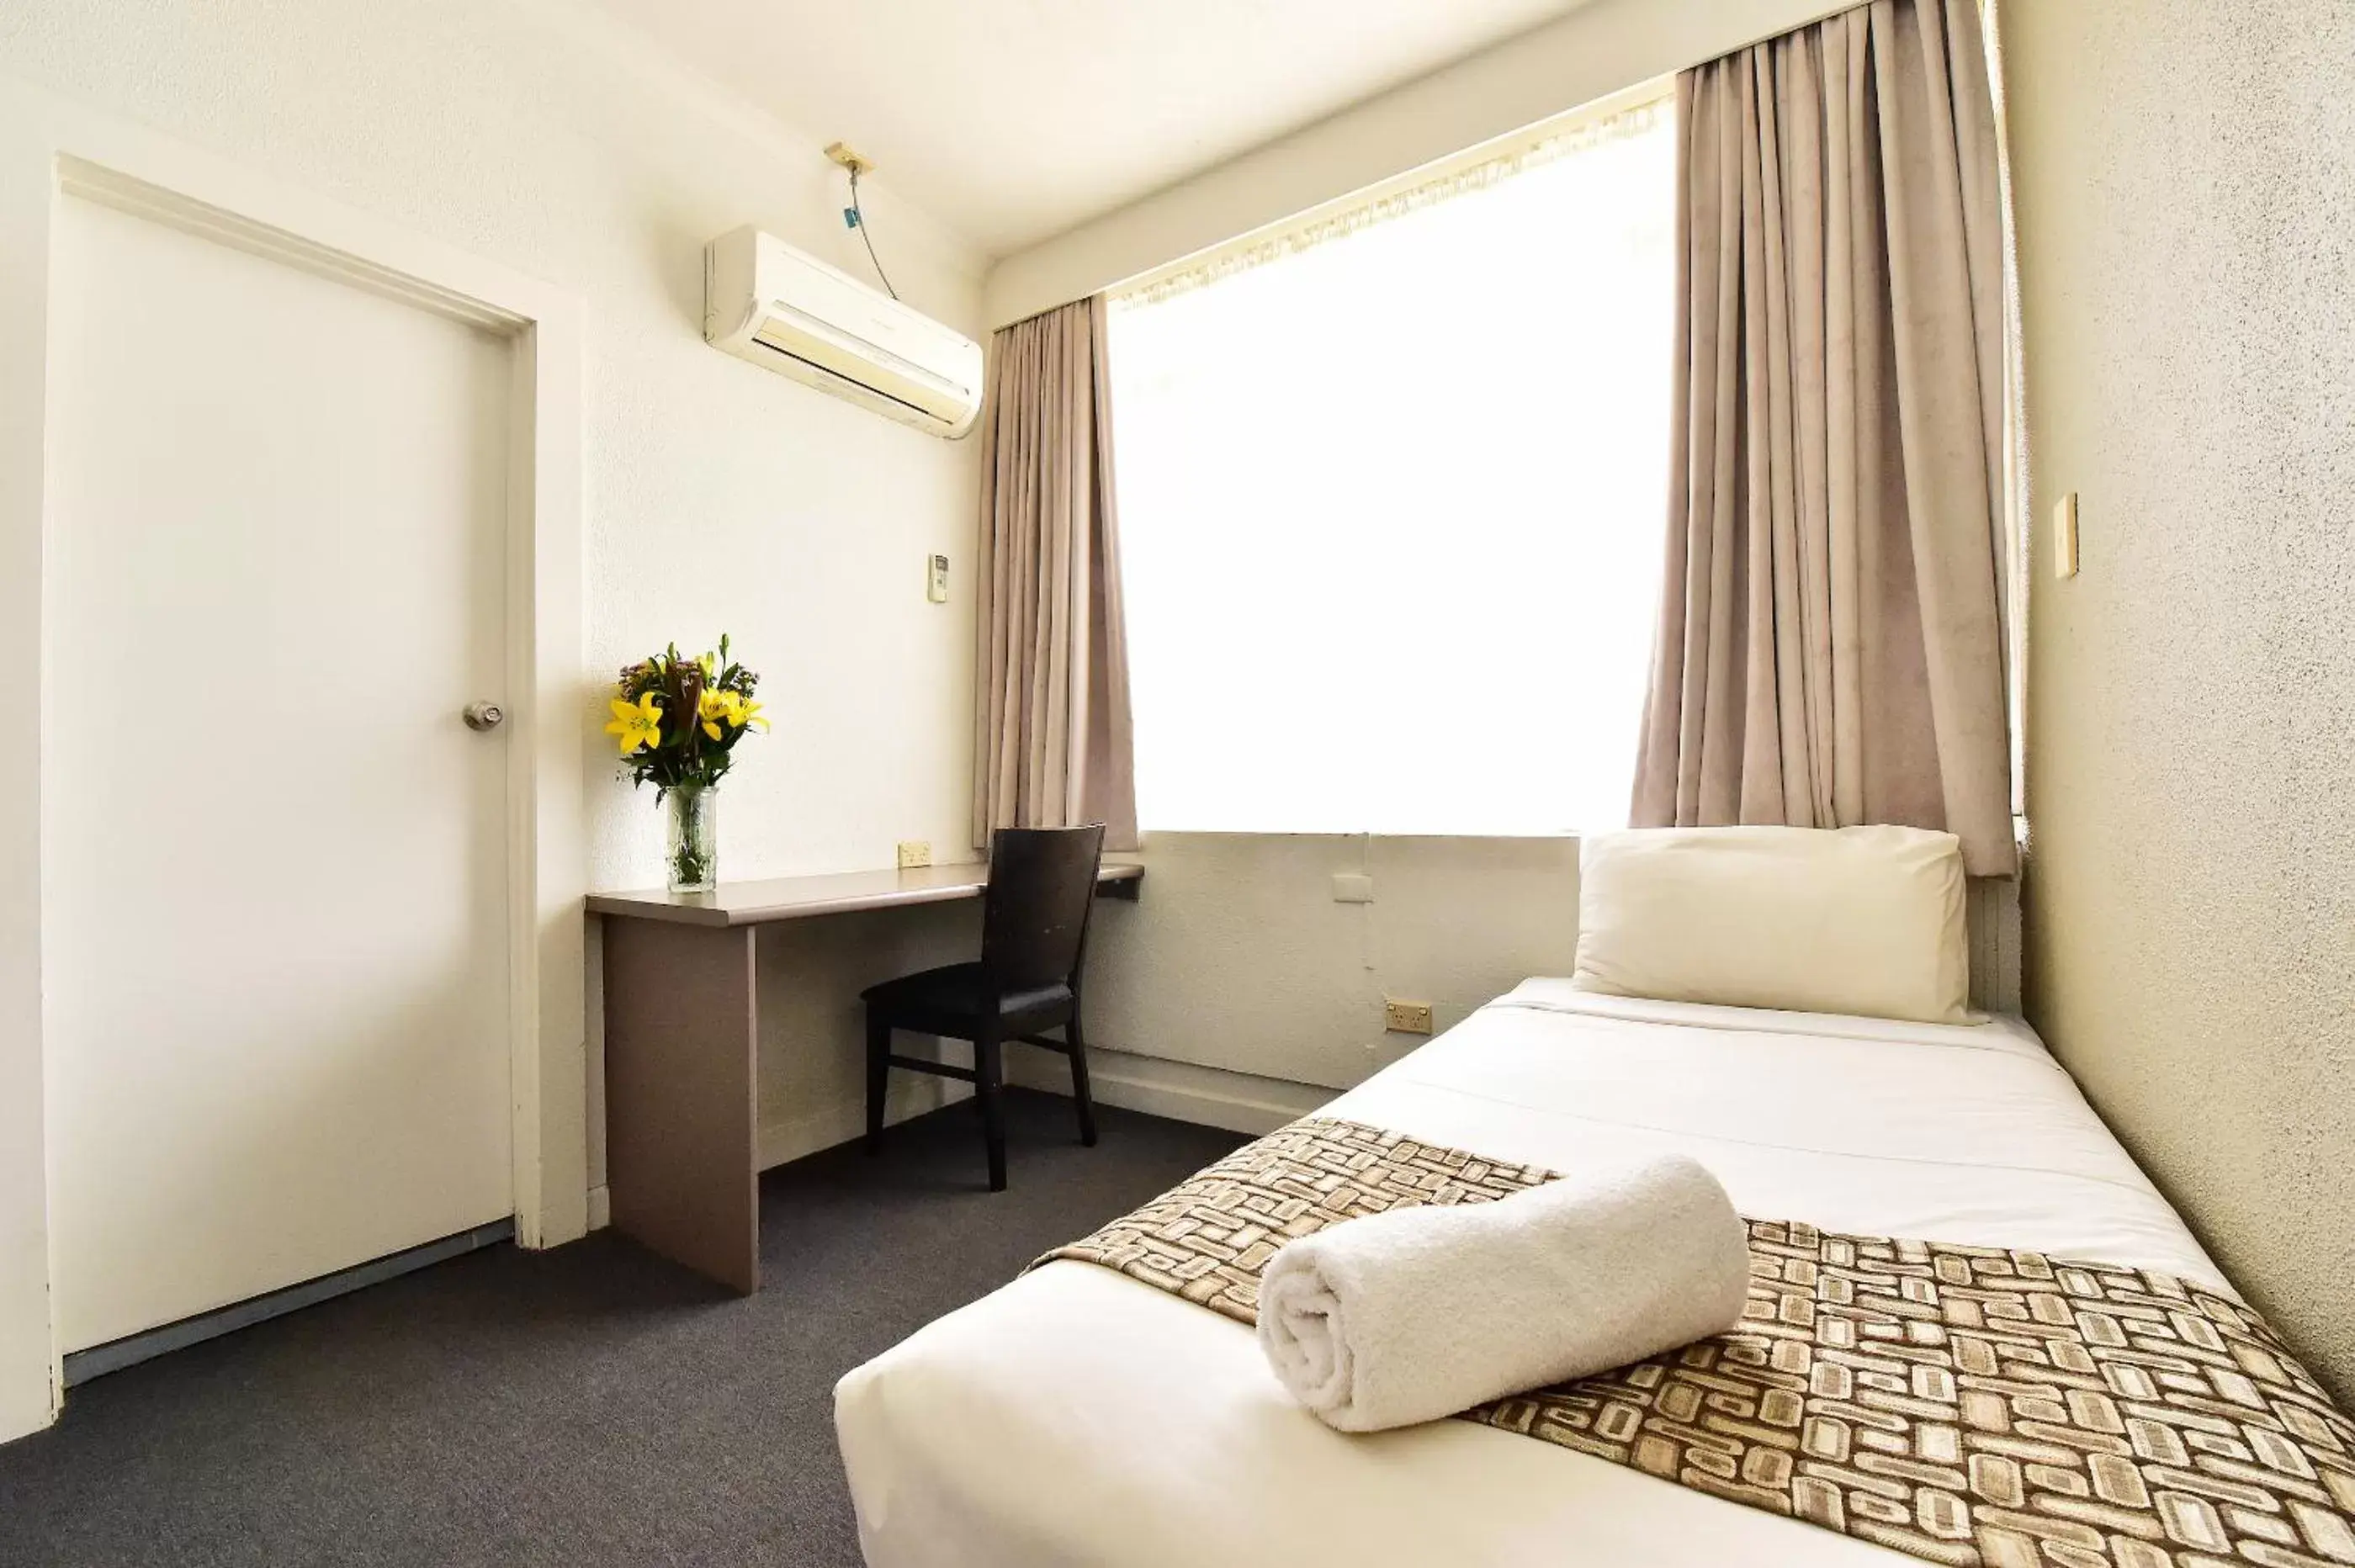 Bedroom, Room Photo in Diplomat Hotel Alice Springs